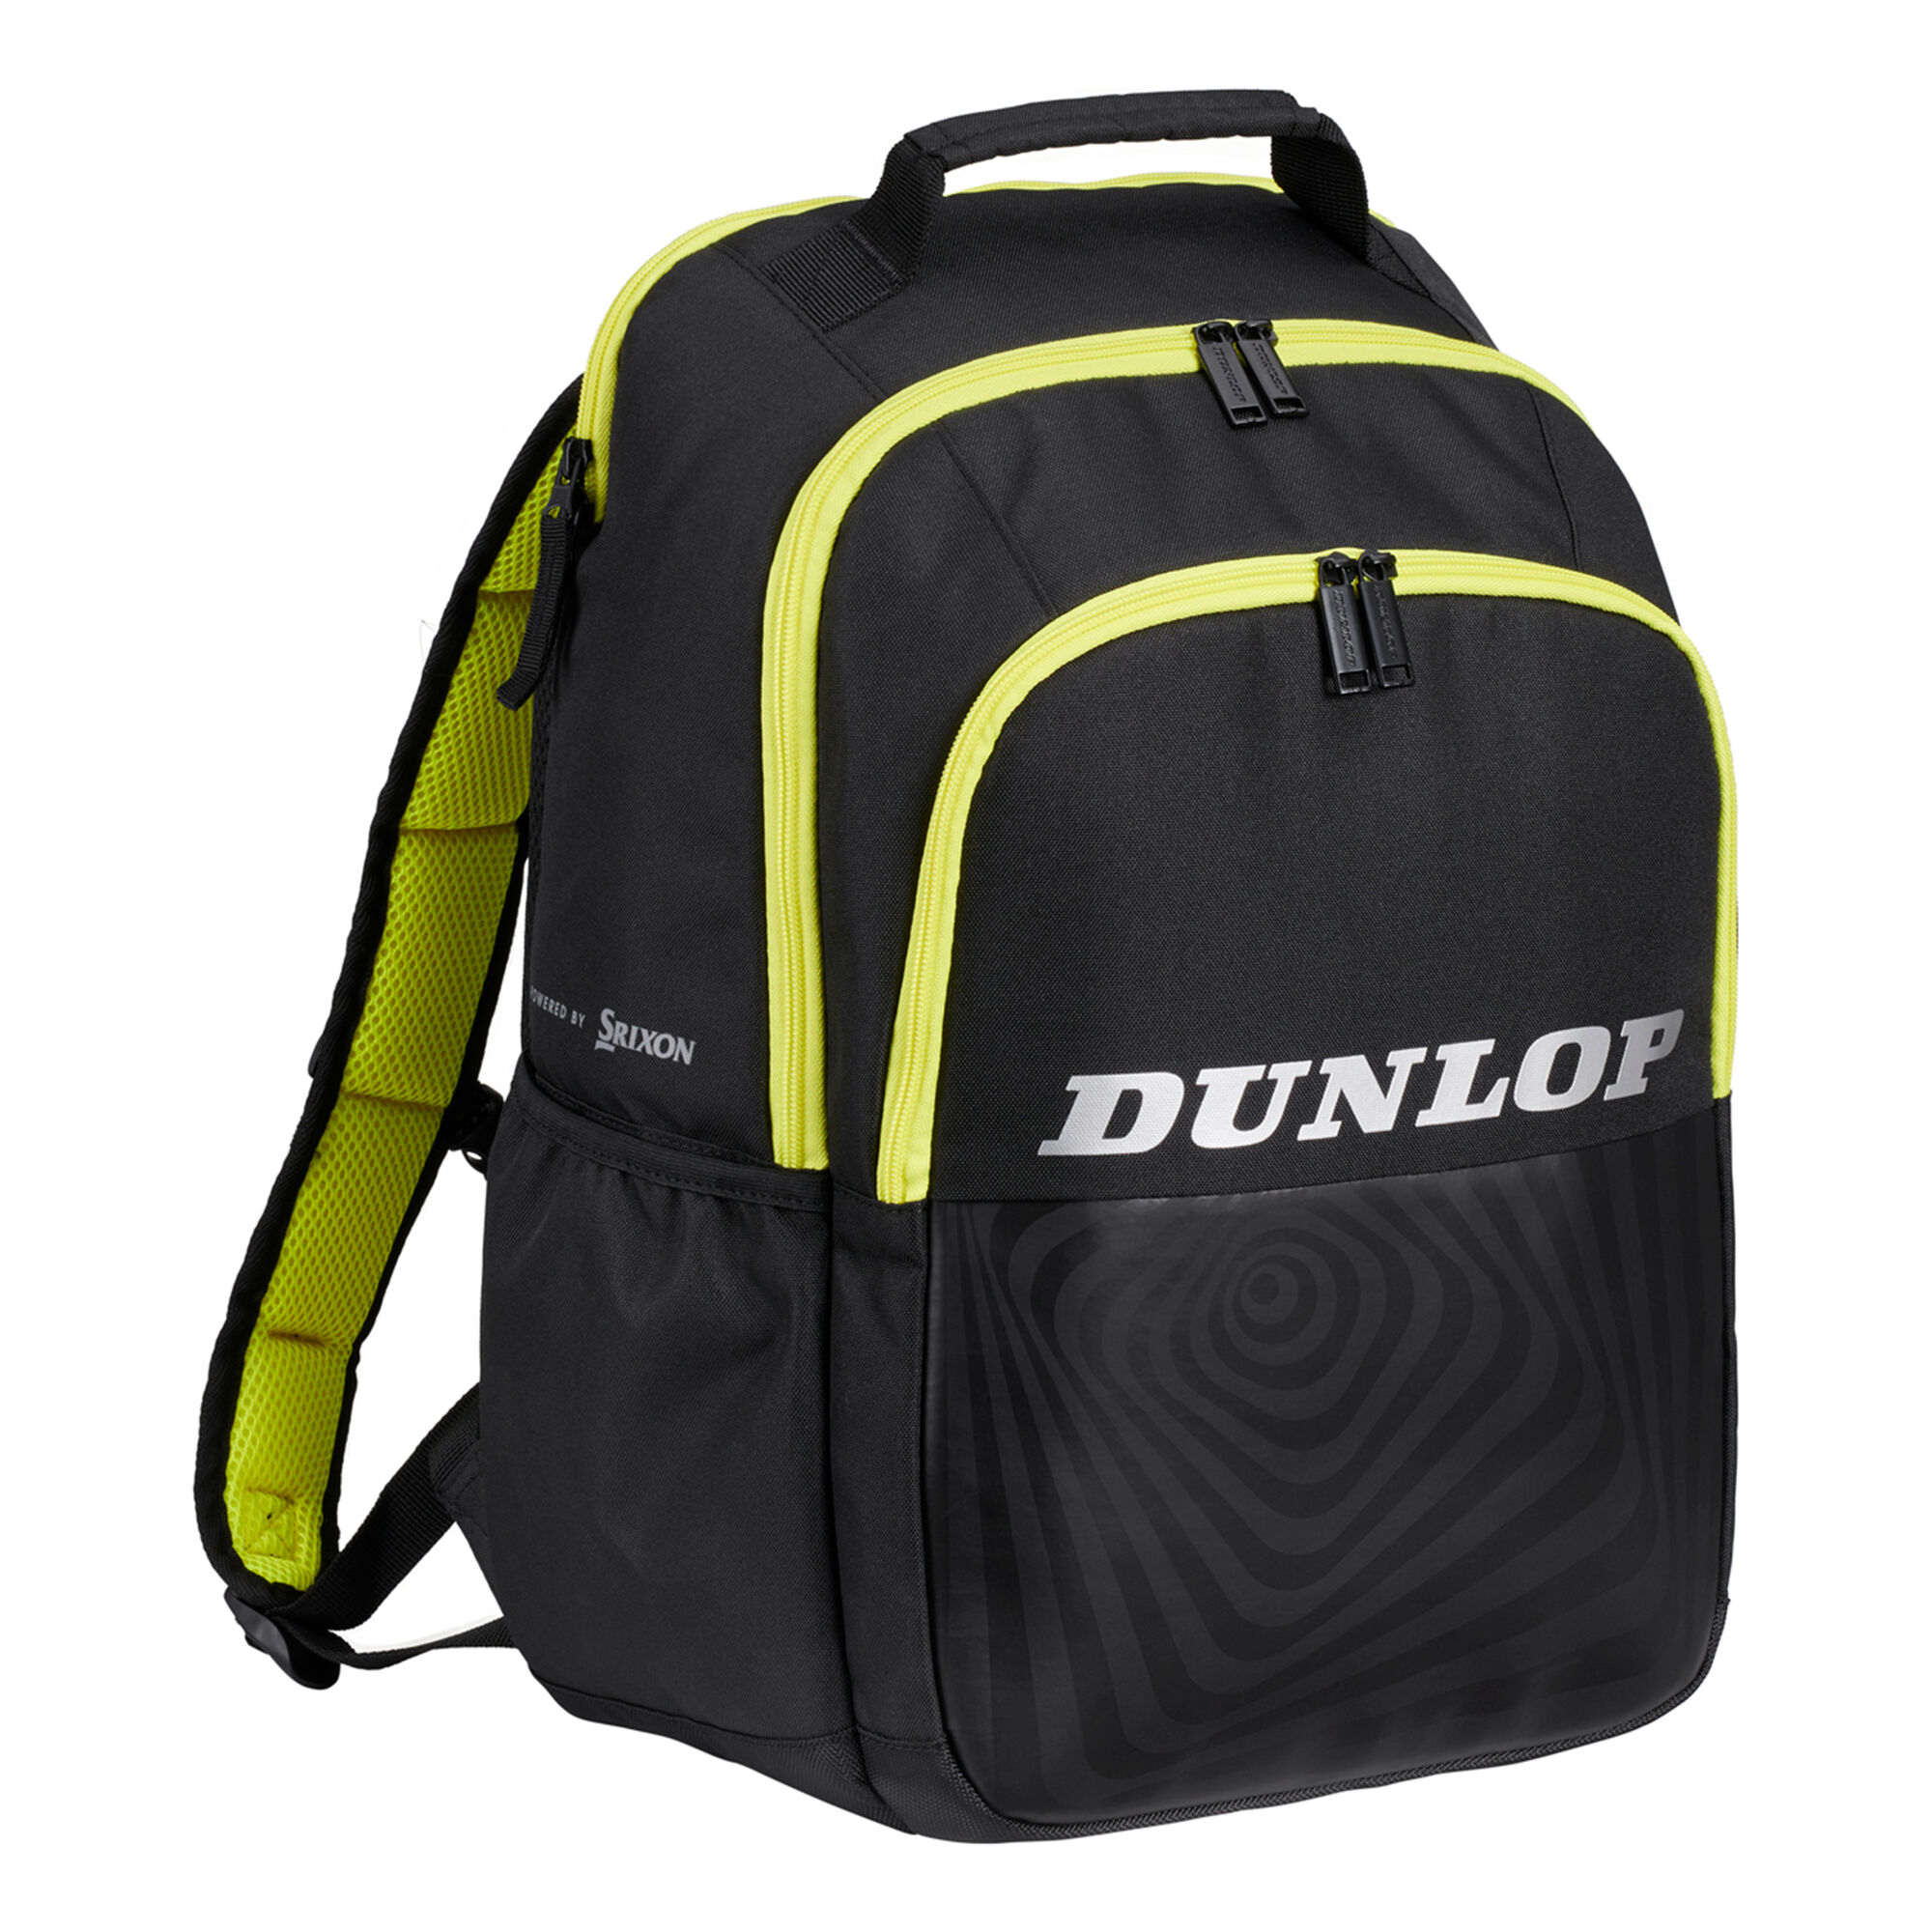 combate Médico basura Dunlop SX Performance Rucksack - Schwarz, Gelb online kaufen | Tennis-Point